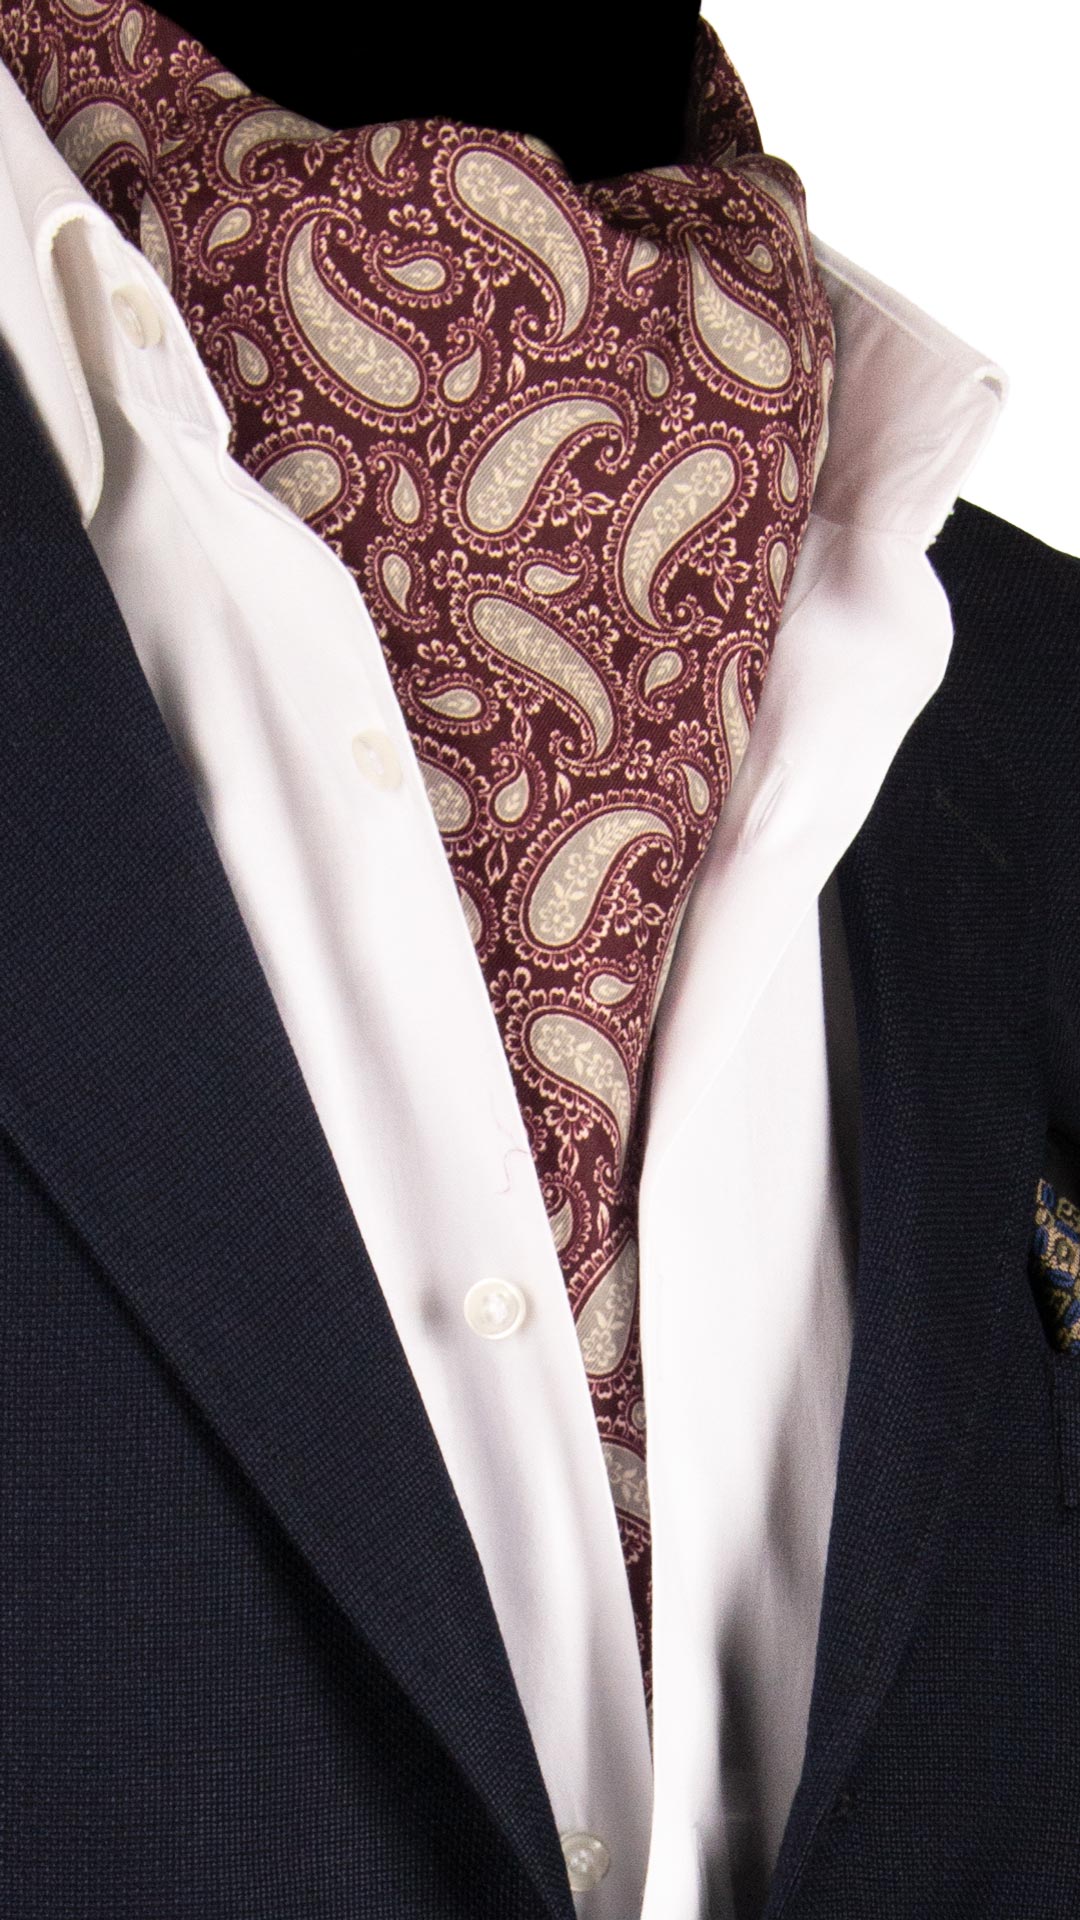 Ascot Stampa di Seta Bordeaux Paisley Tono su Tono Grigio Made in Italy Graffeo Cravatte Manichino